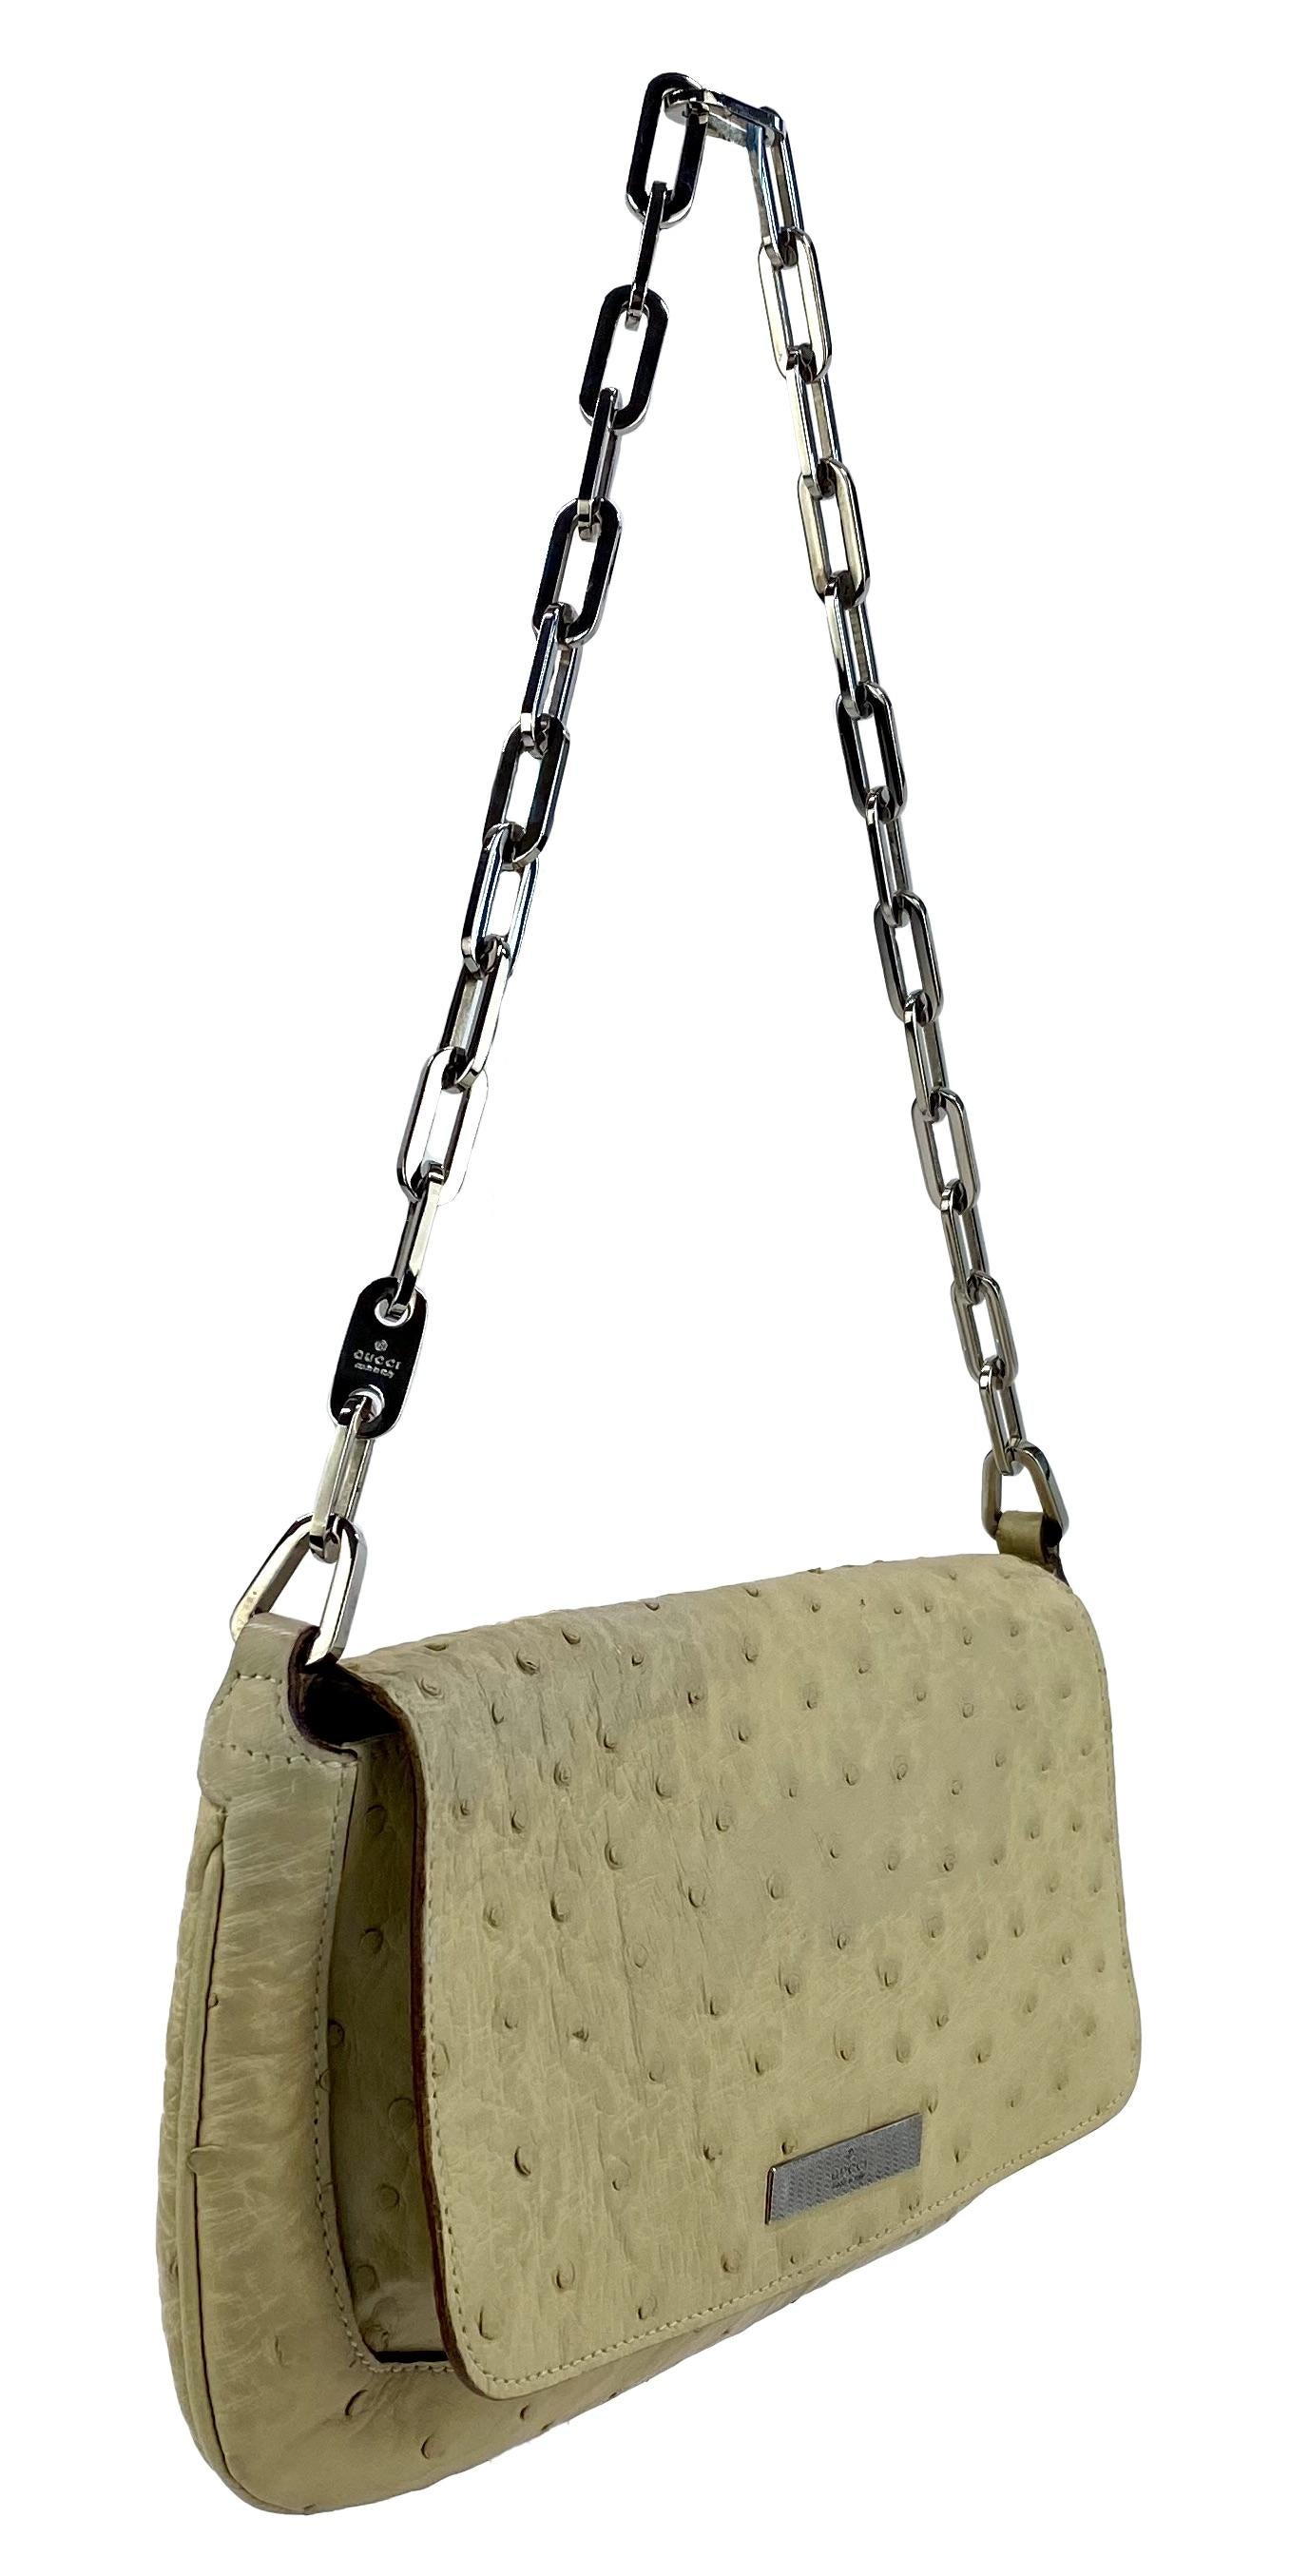 Wir präsentieren eine wunderschöne Gucci-Tasche aus Straußenleder mit einem Kettenhenkel, entworfen von Tom Ford. Diese Tasche aus der Frühjahr/Sommer-Kollektion 2000 ist fast vollständig aus Straußenleder gefertigt und innen mit Nylon ausgekleidet.